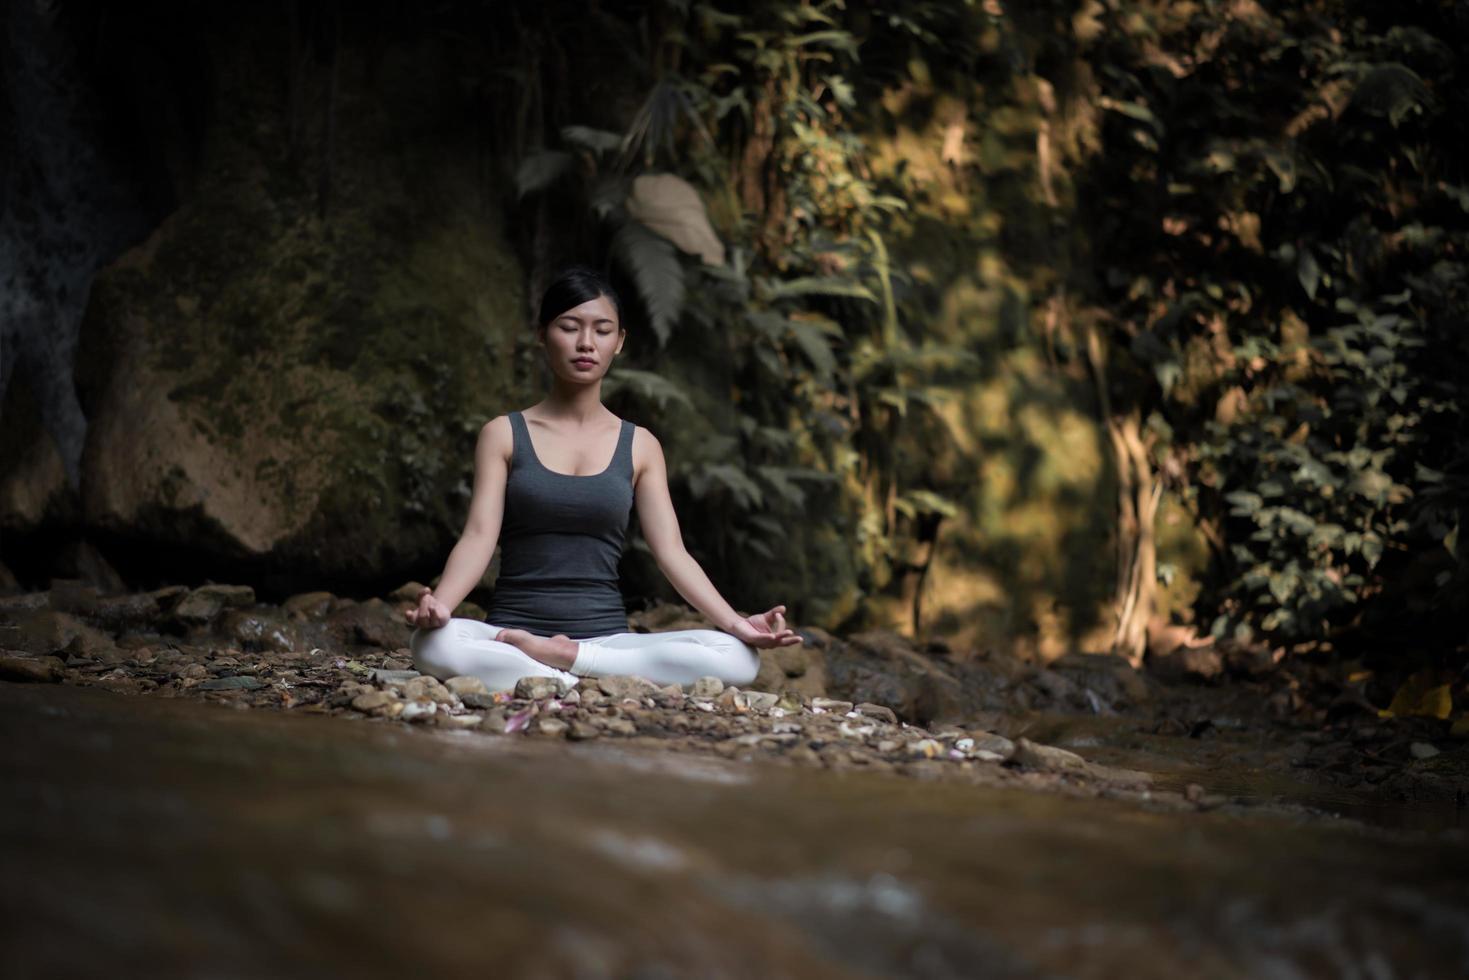 giovane donna in una posa yoga seduto vicino a una cascata foto